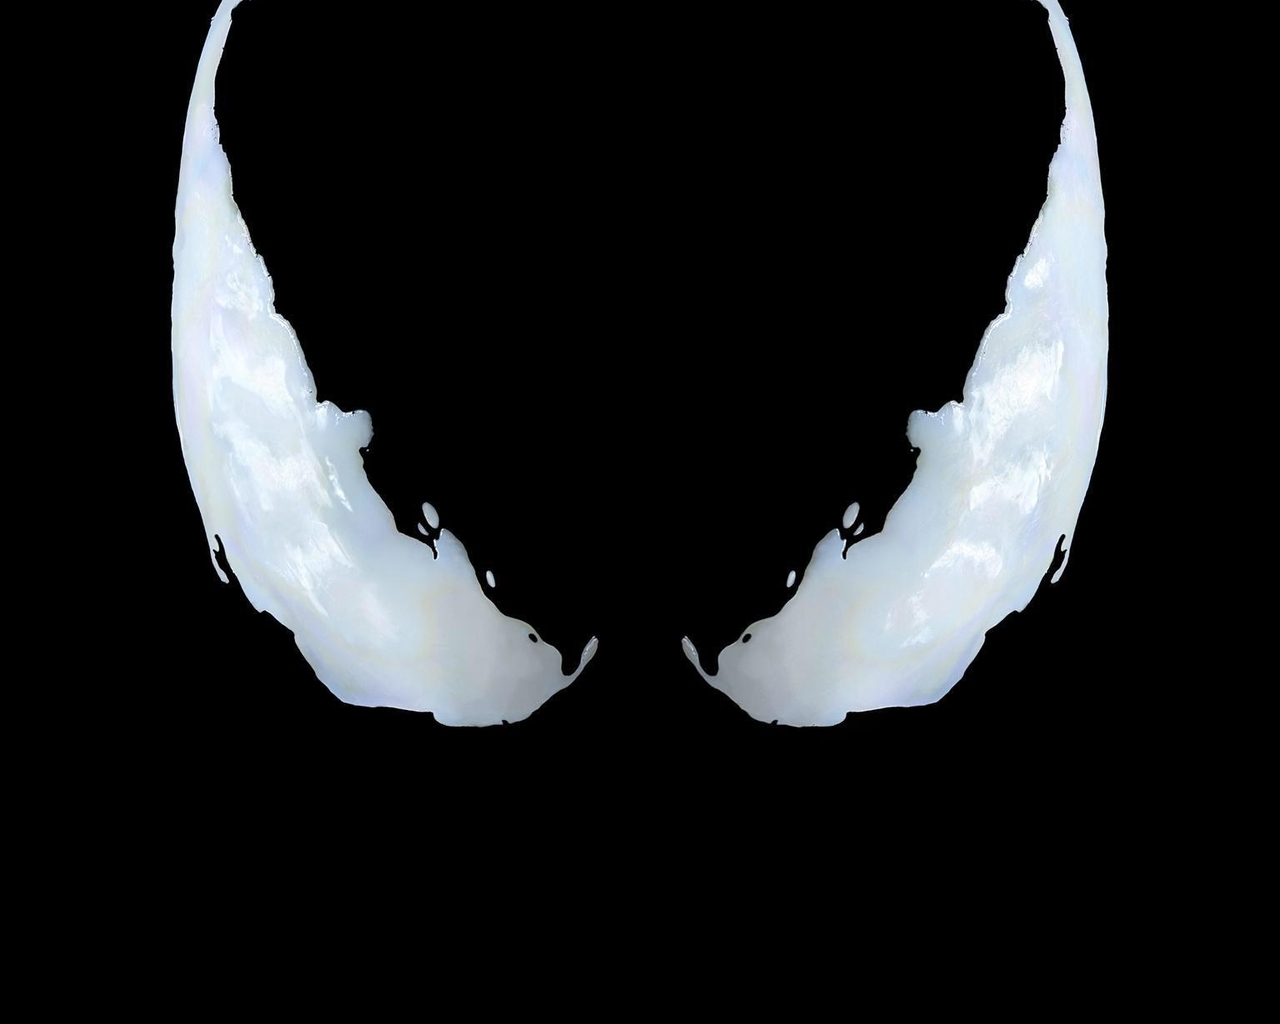 Image: Eyes, background, black, white, Venom, symbiote, Marvel, Sony